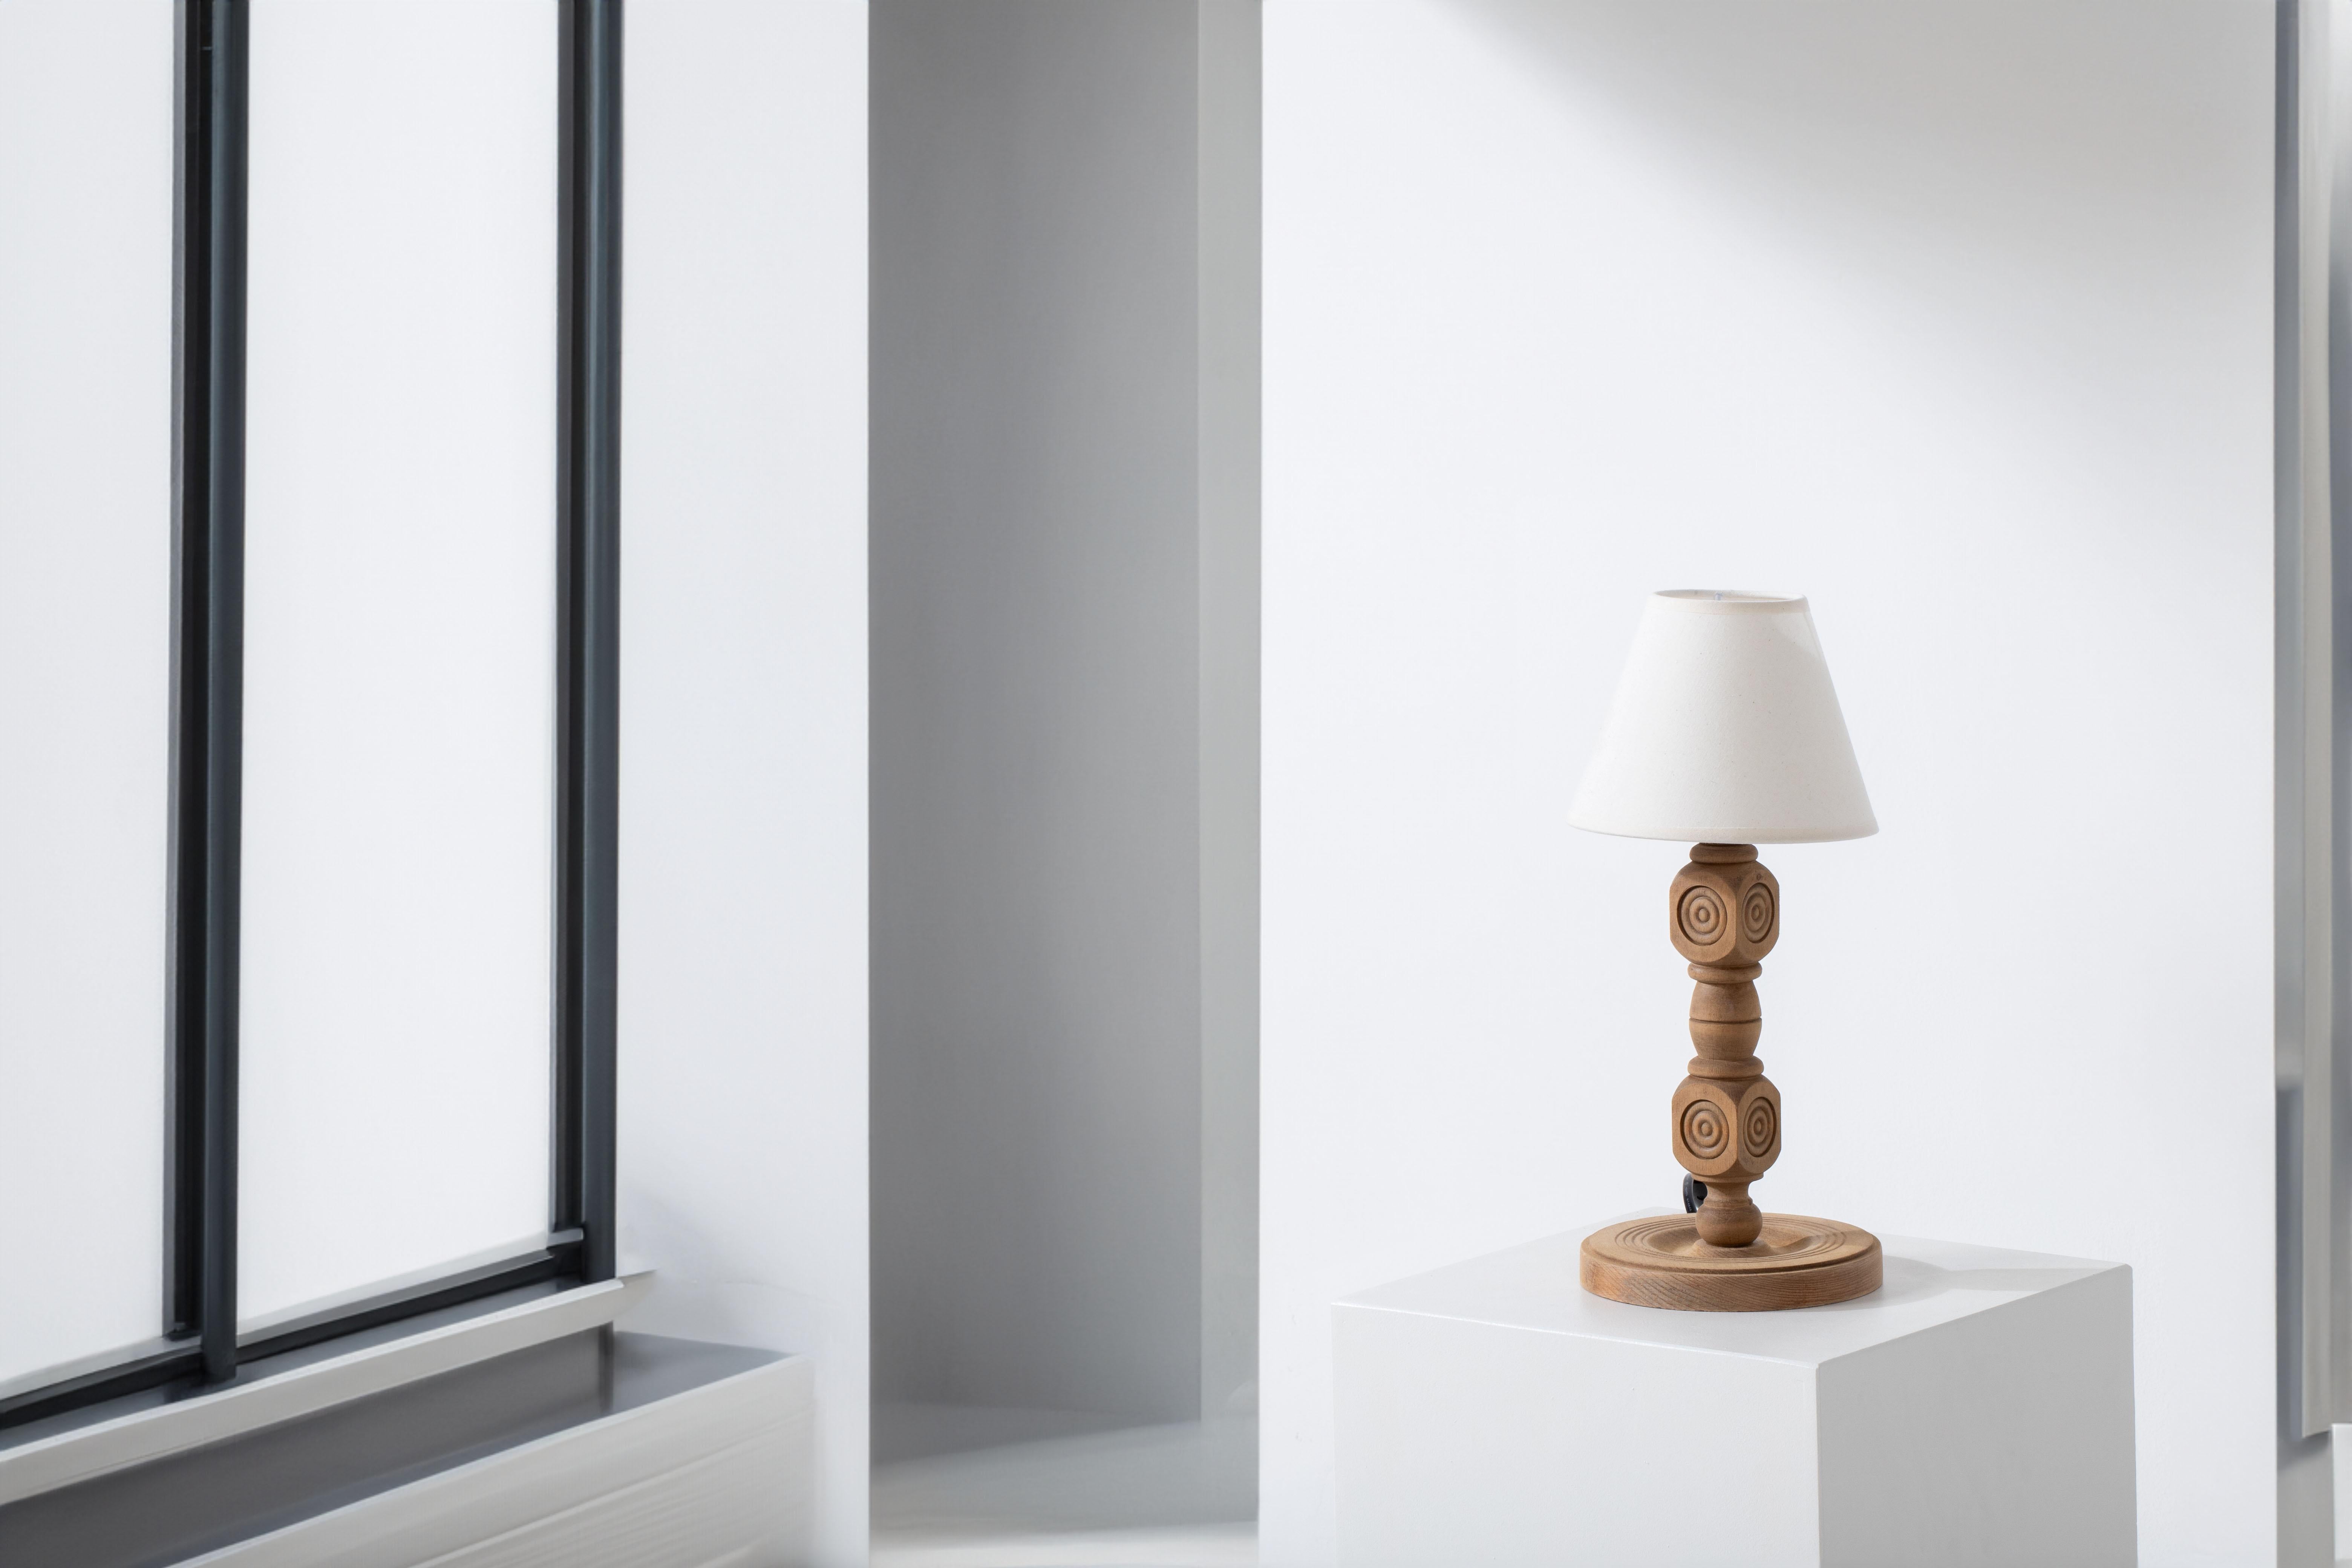 Elegante lampe de table sculptée à la main : Un chef-d'œuvre des années 1940 inspiré par Dudouyt

Entrez dans l'élégance raffinée des années 1940 avec cette exquise lampe de table sculptée à la main, qui rappelle le style emblématique de Charles